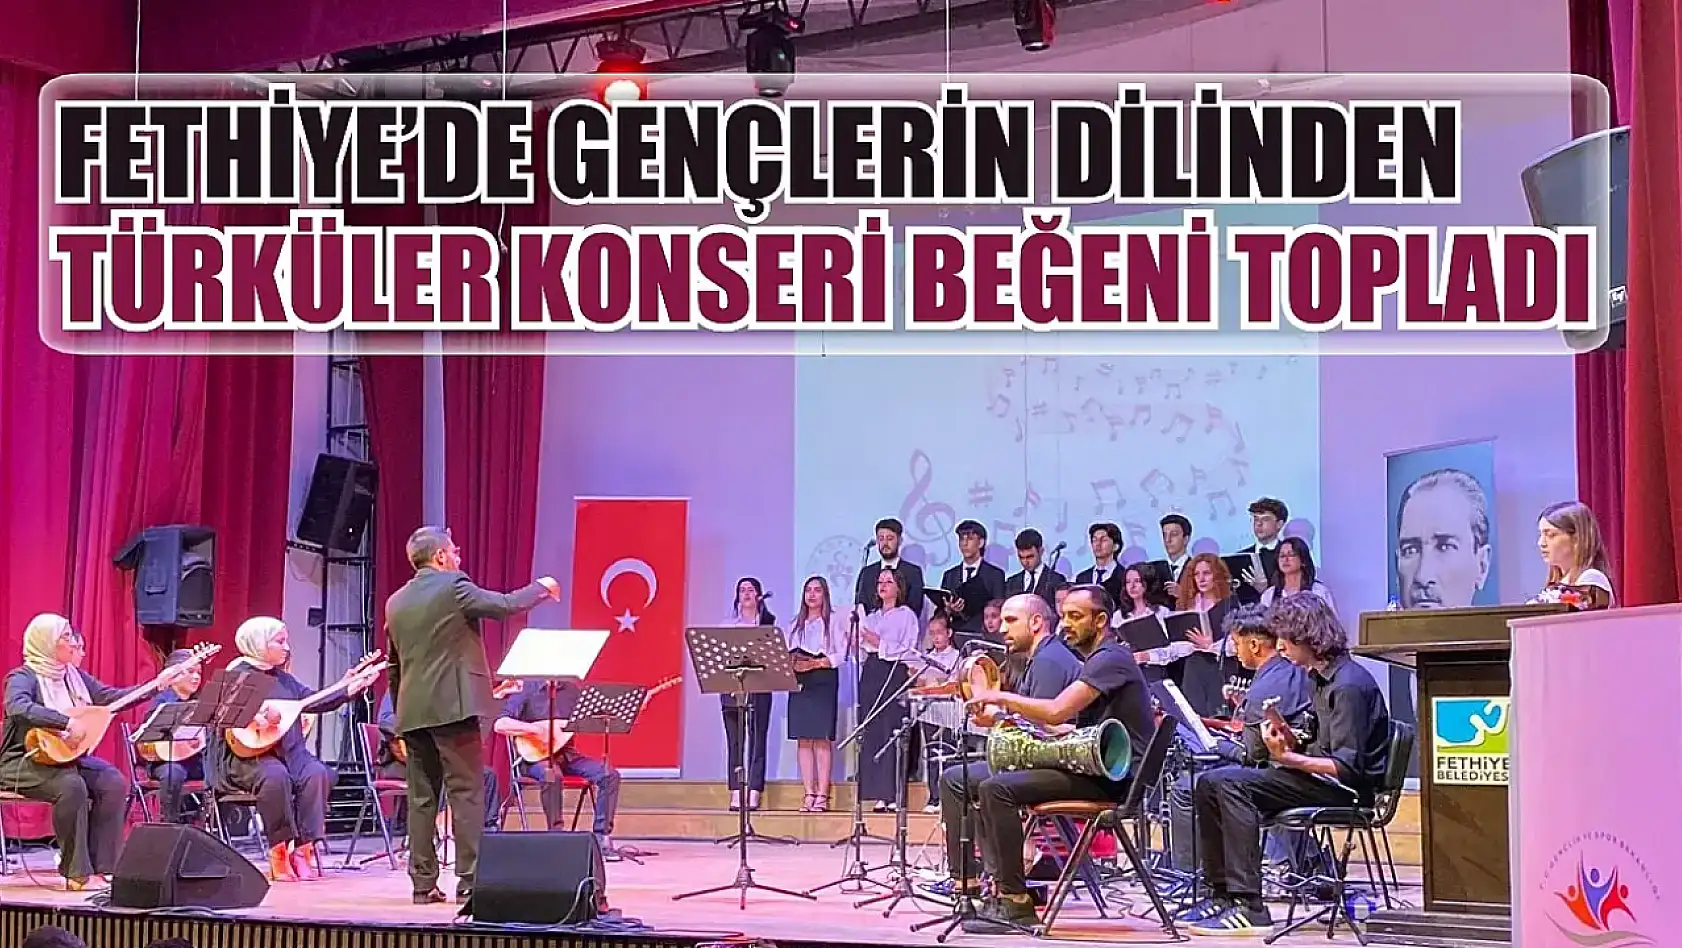 Fethiye'de Gençlerin Dilinden Türküler Konseri beğeni topladı